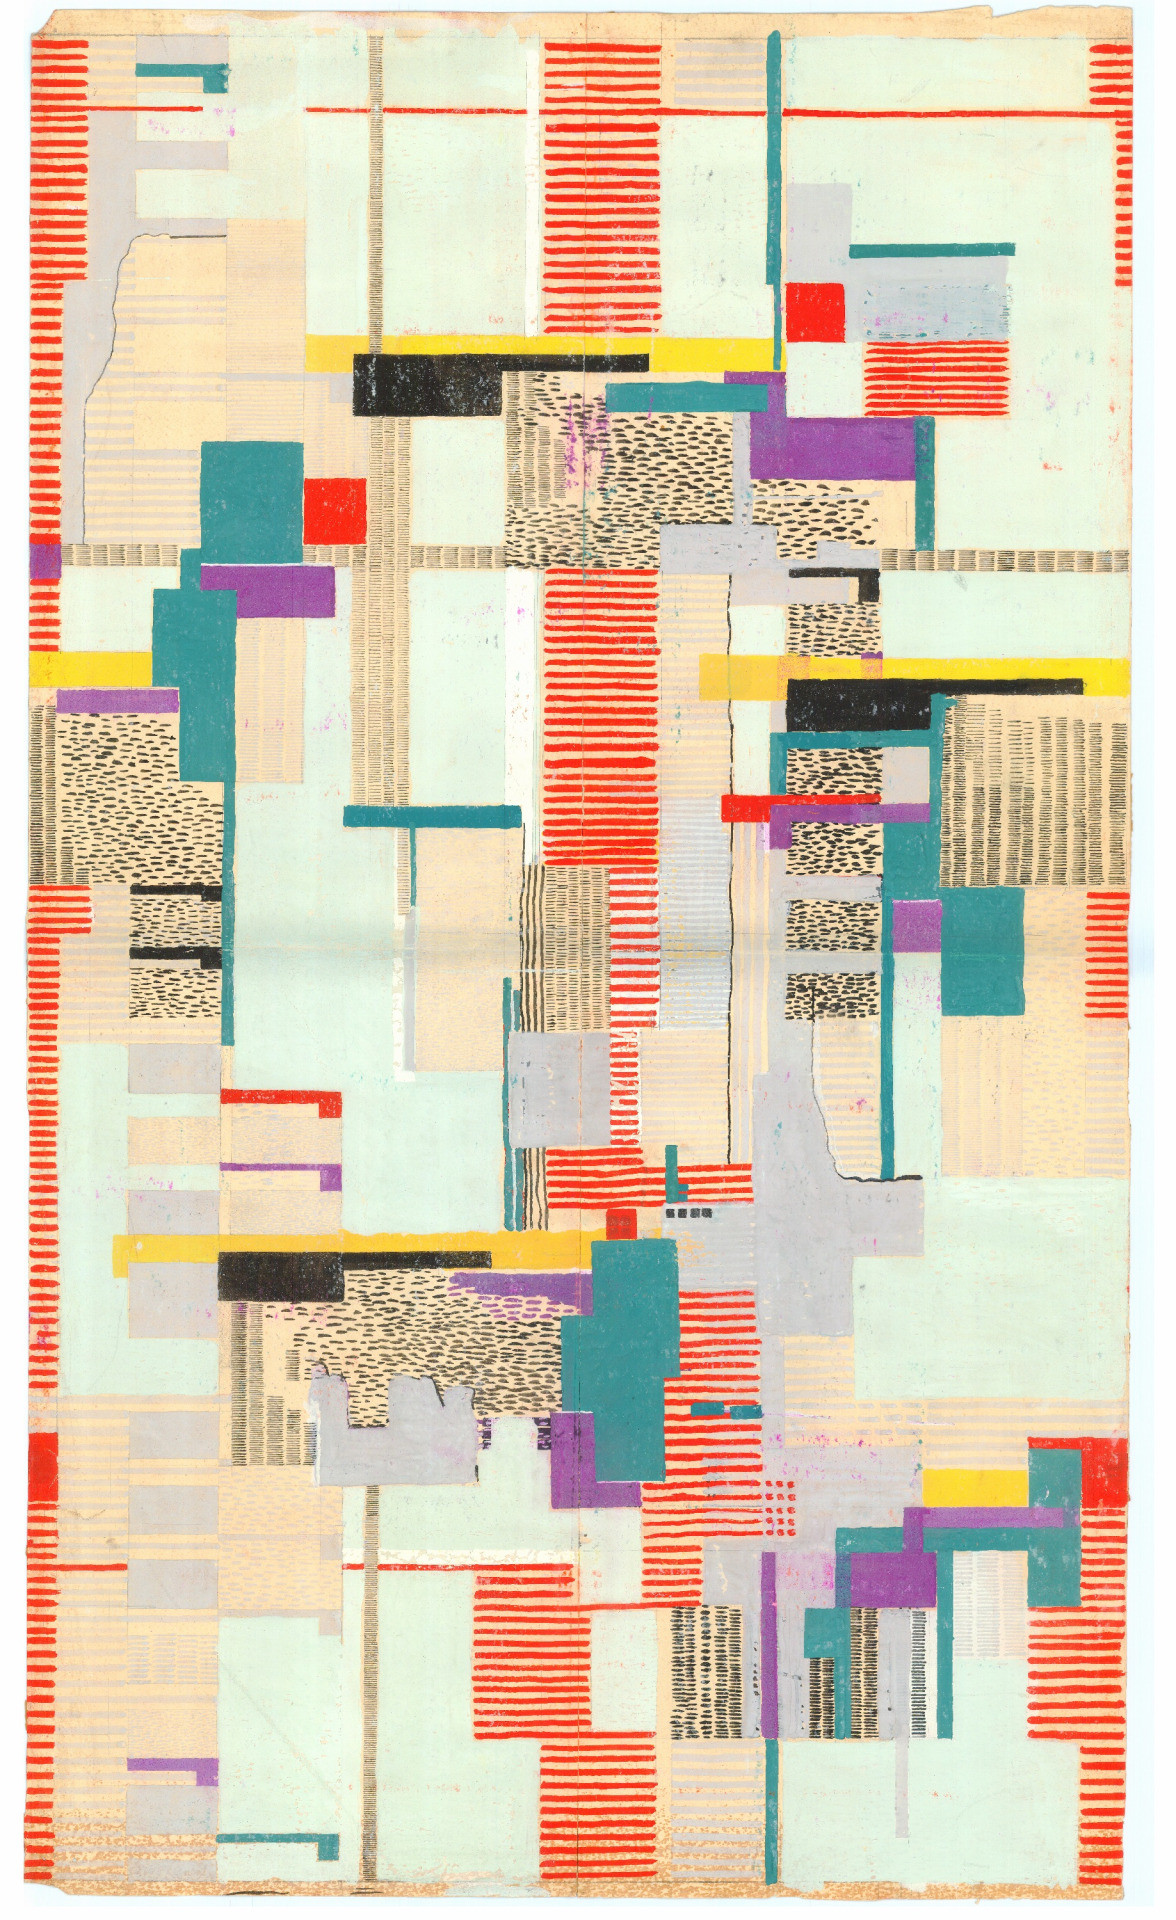 1176x1920 Arne Jacobsen, design drawing, textile or wallpaper, 1950s-60s. Denmark.